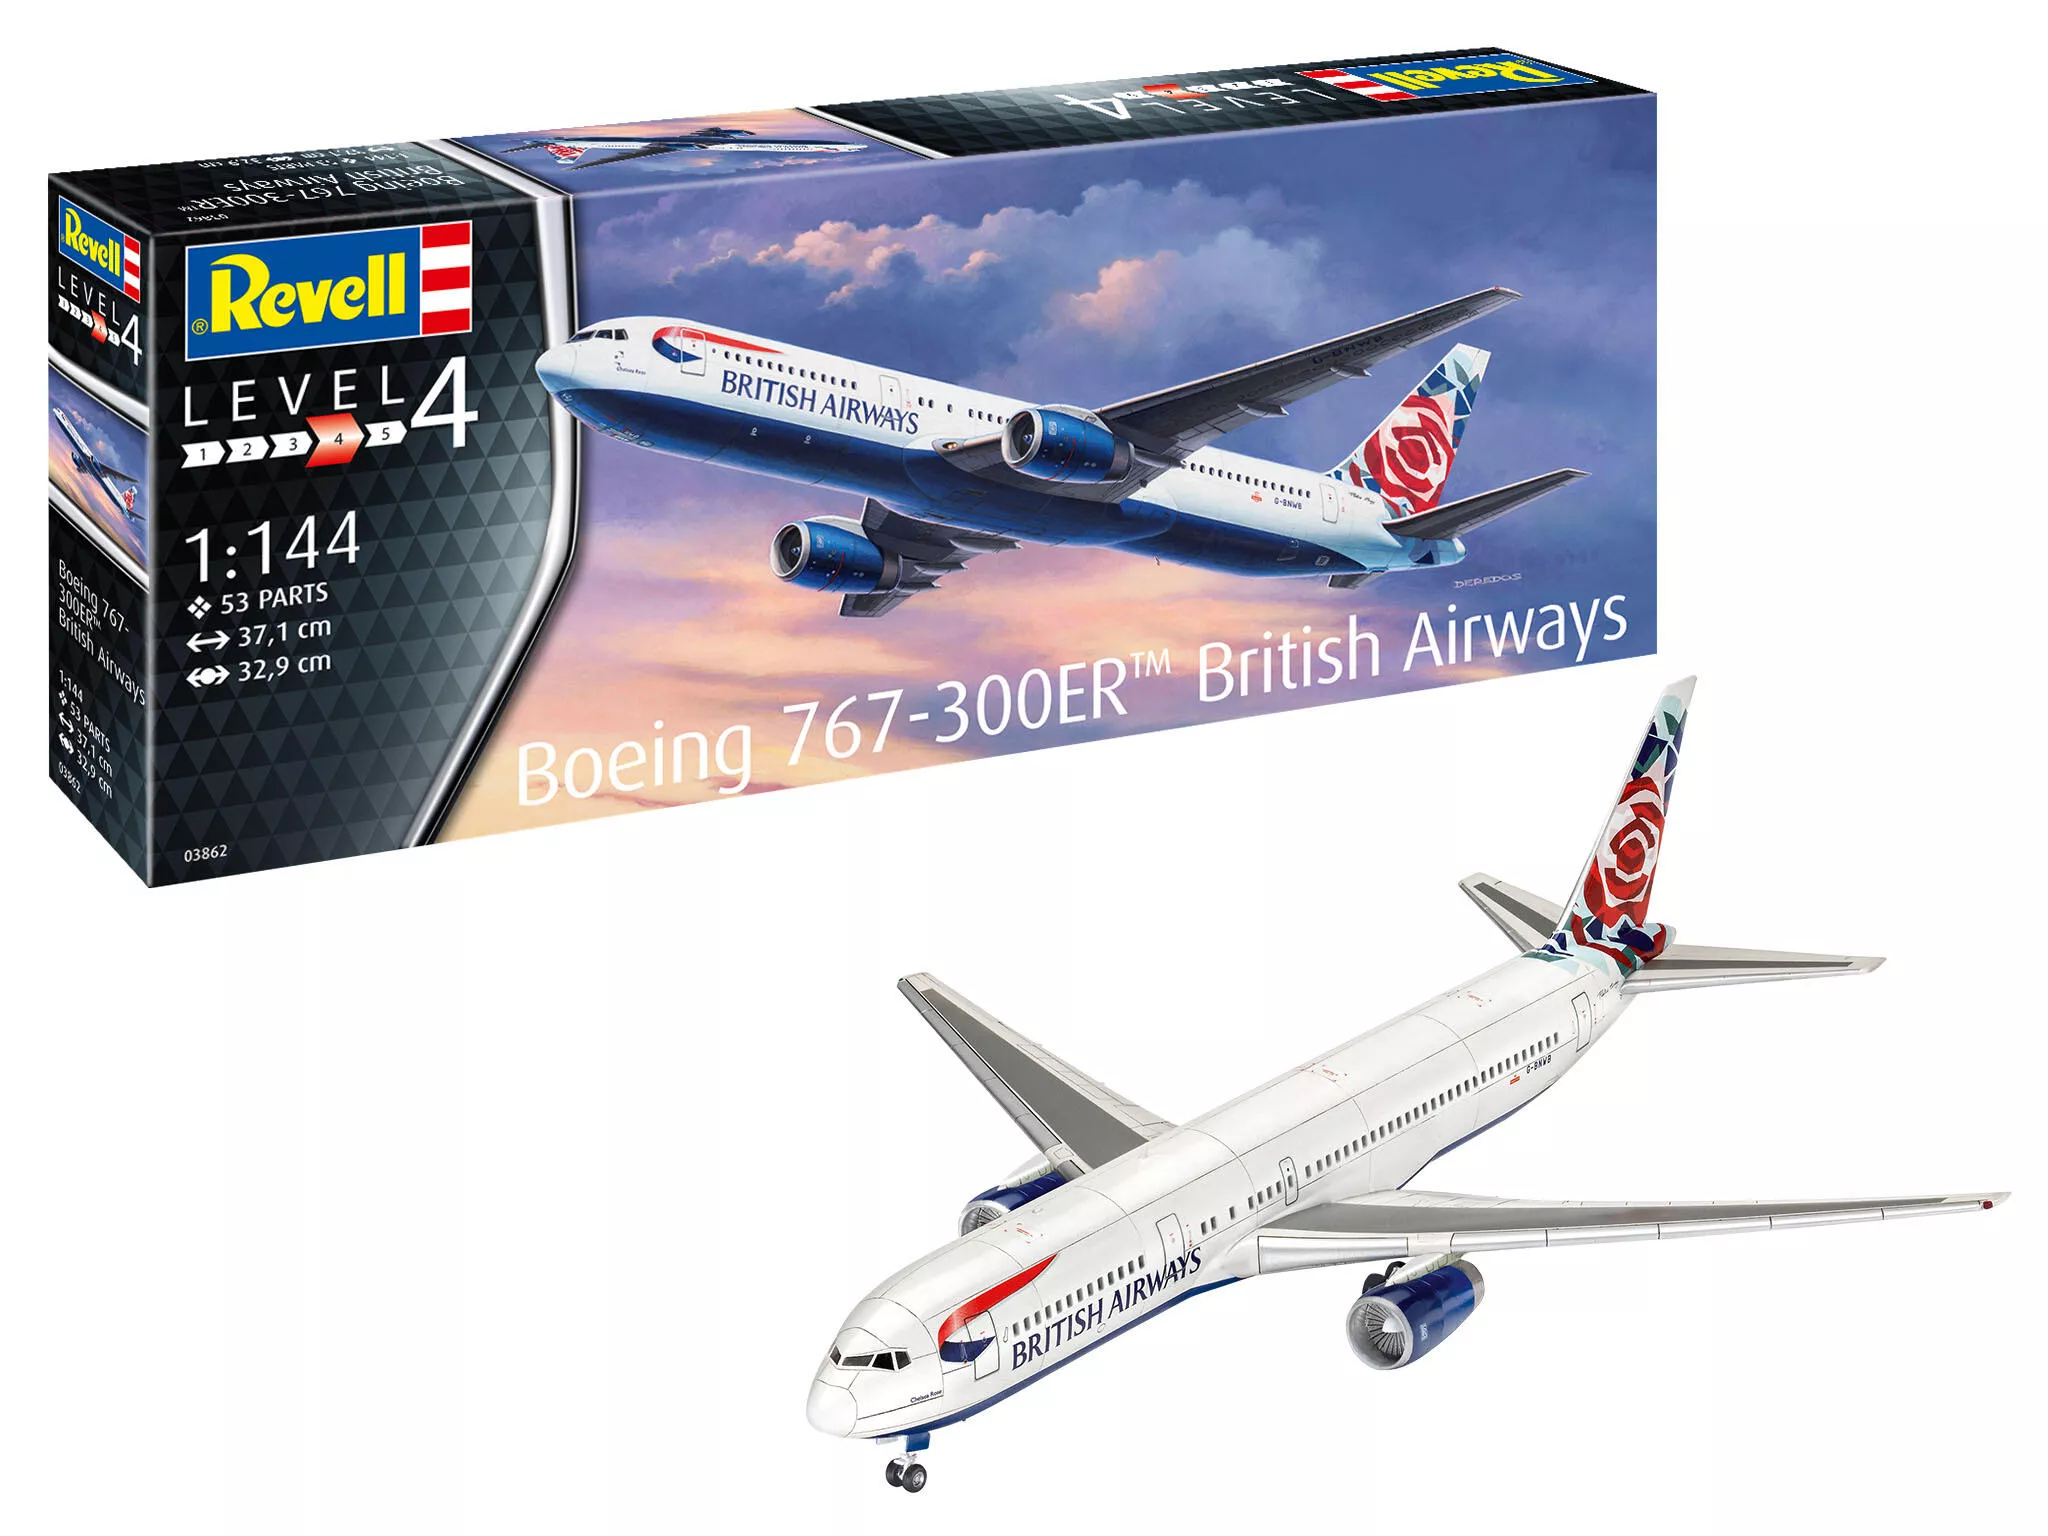 Revell 3862 Boeing 767-300ER "British Airways" Revell Modellbausatz